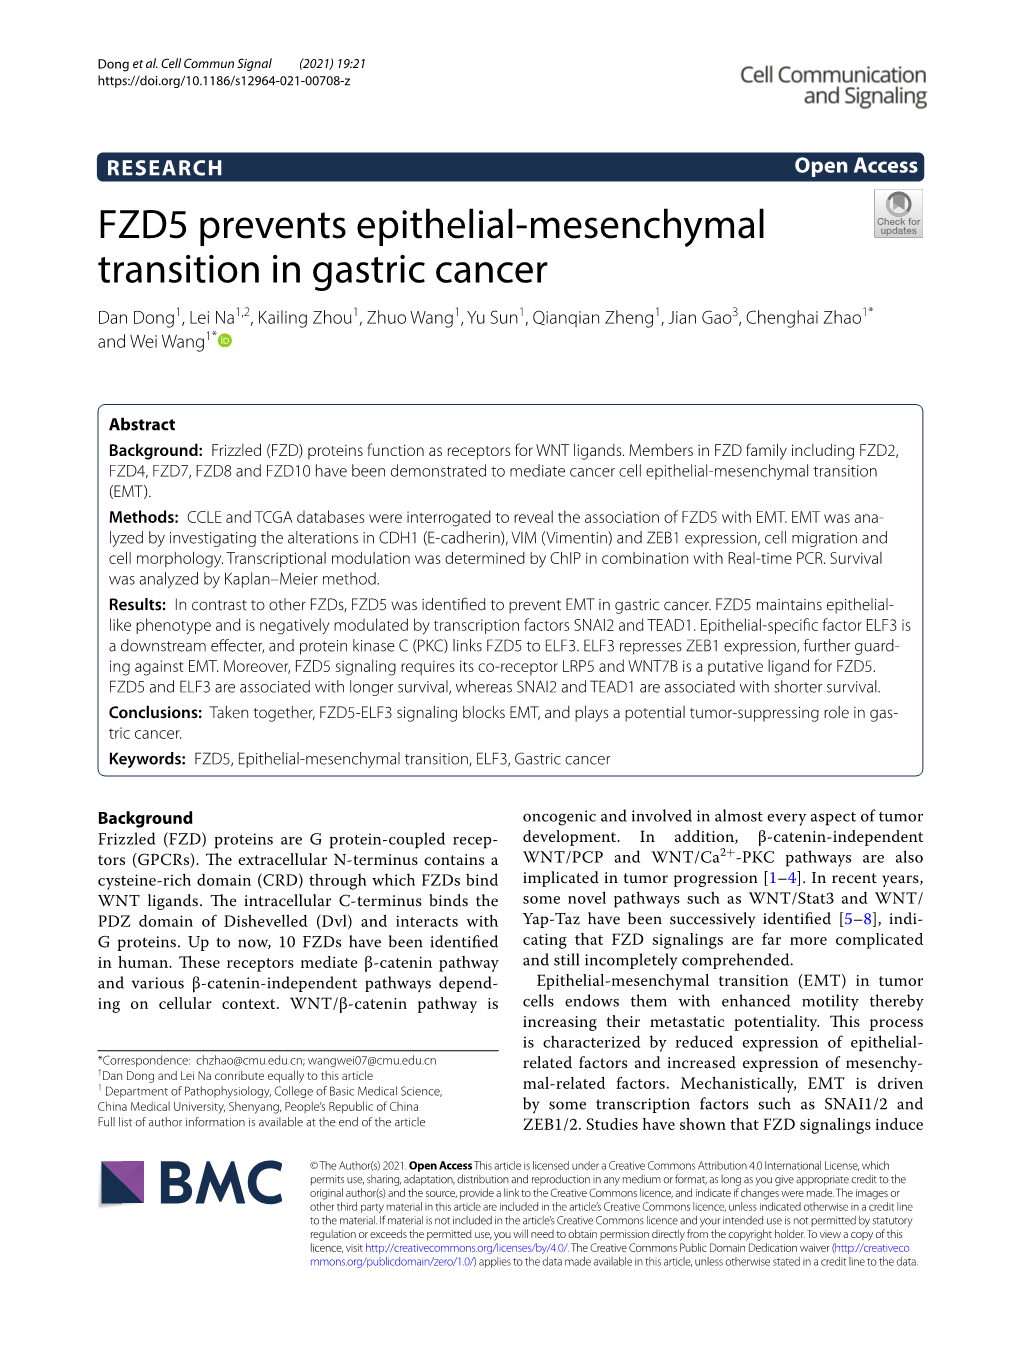 FZD5 Prevents Epithelial-Mesenchymal Transition